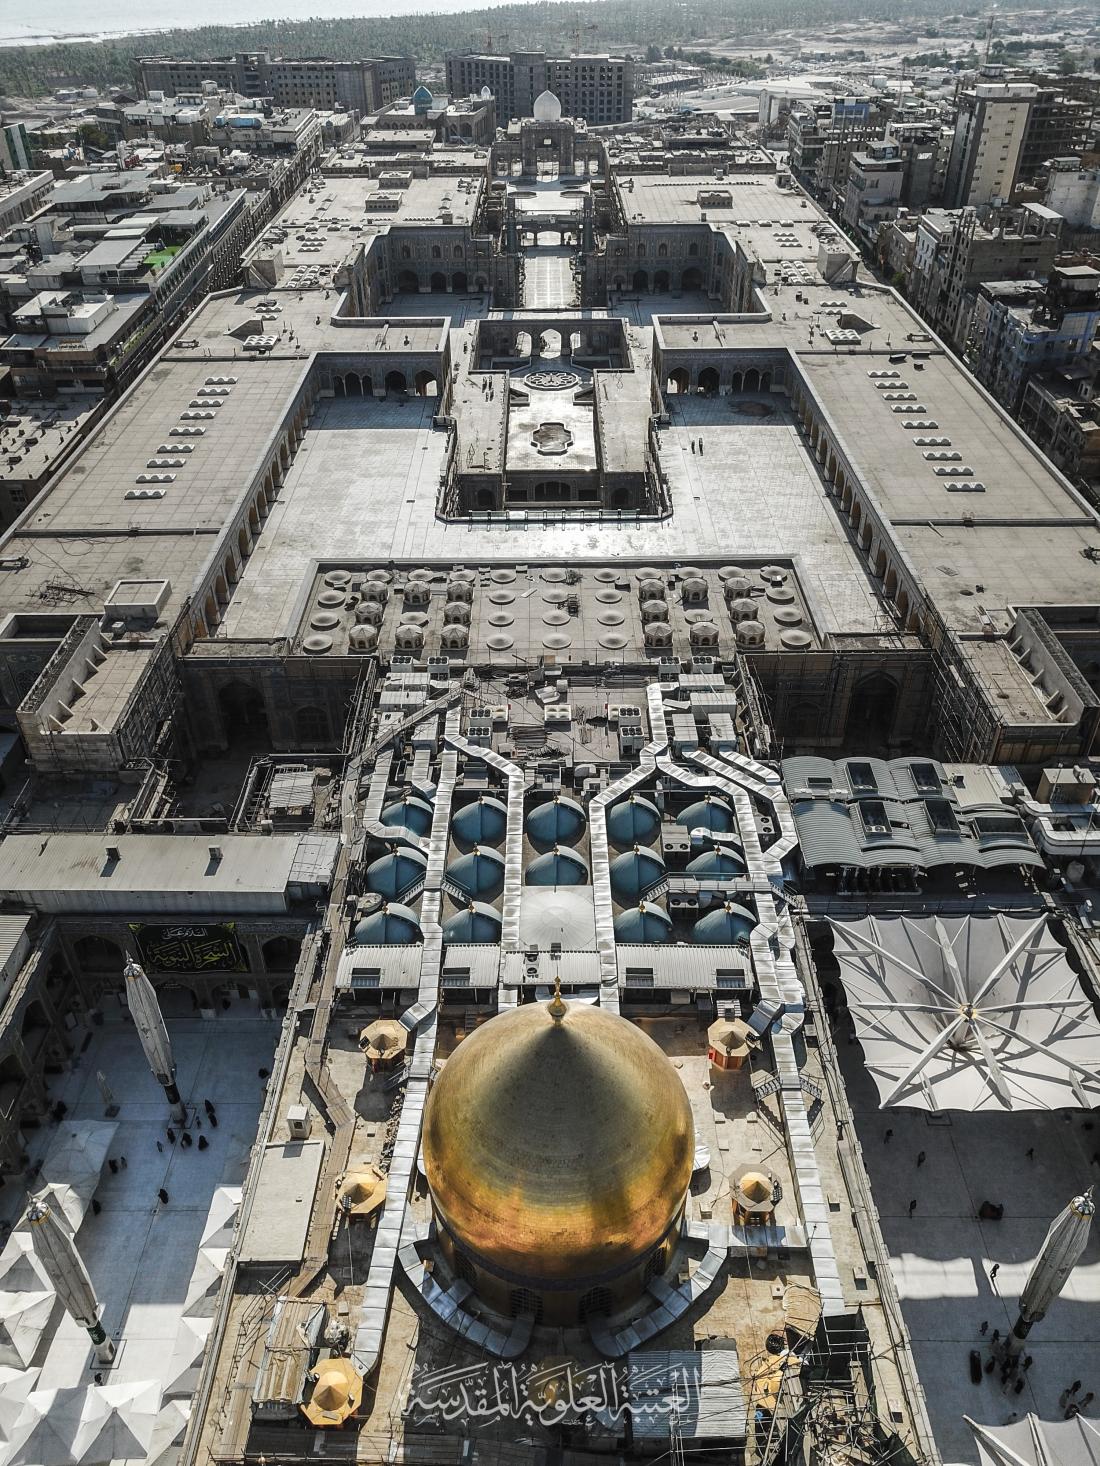 صحن فاطمة الزهراء عليها السلام - فن العمارة الاسلامية في صور | 